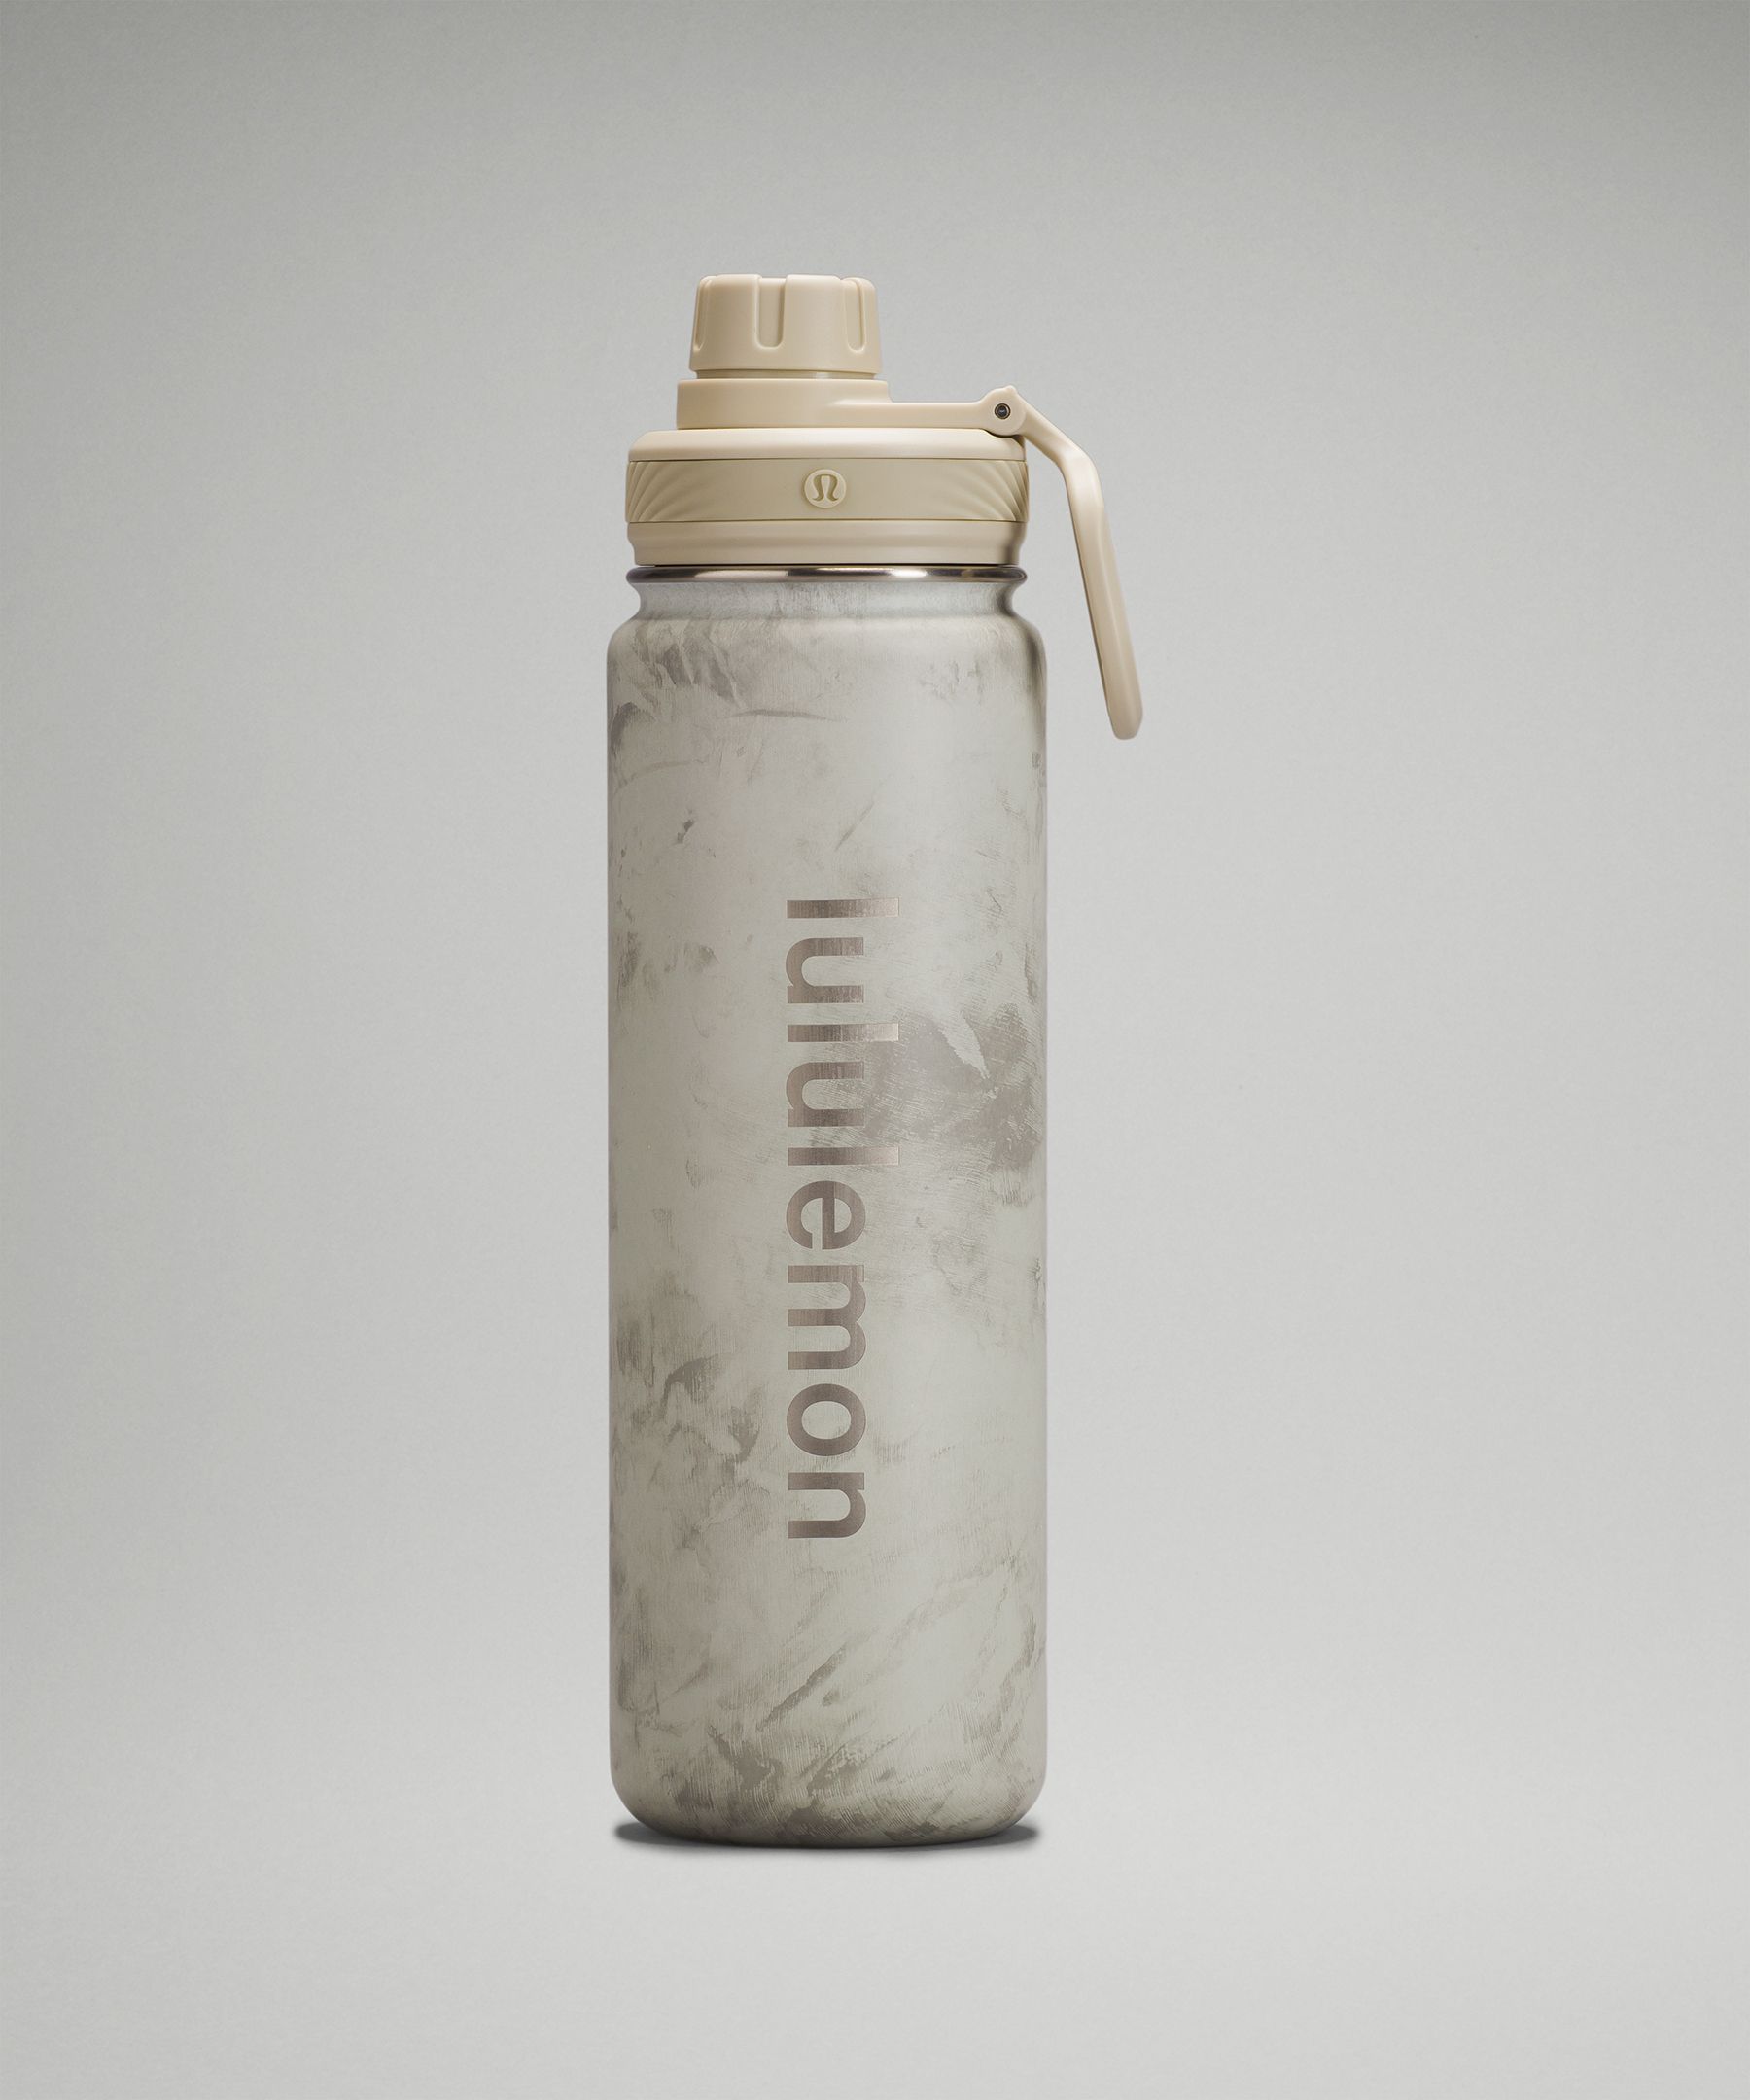 Lululemon Back to Life Sport Bottle 64oz - White/Neutral